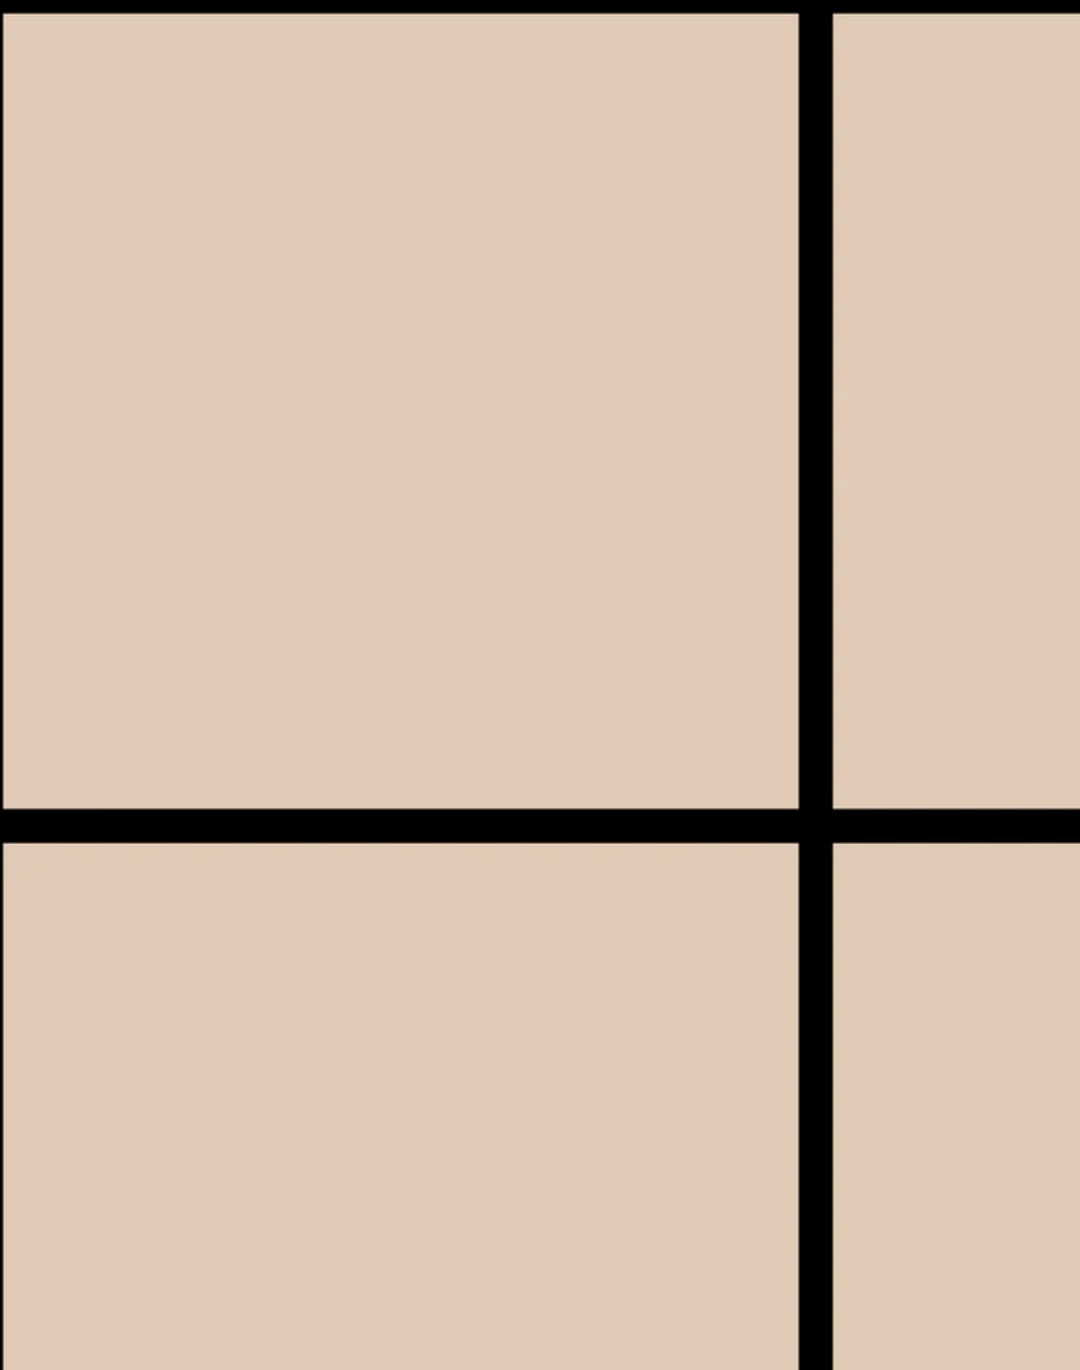 Grid - Large Bold, Line: Black | Background: Tan